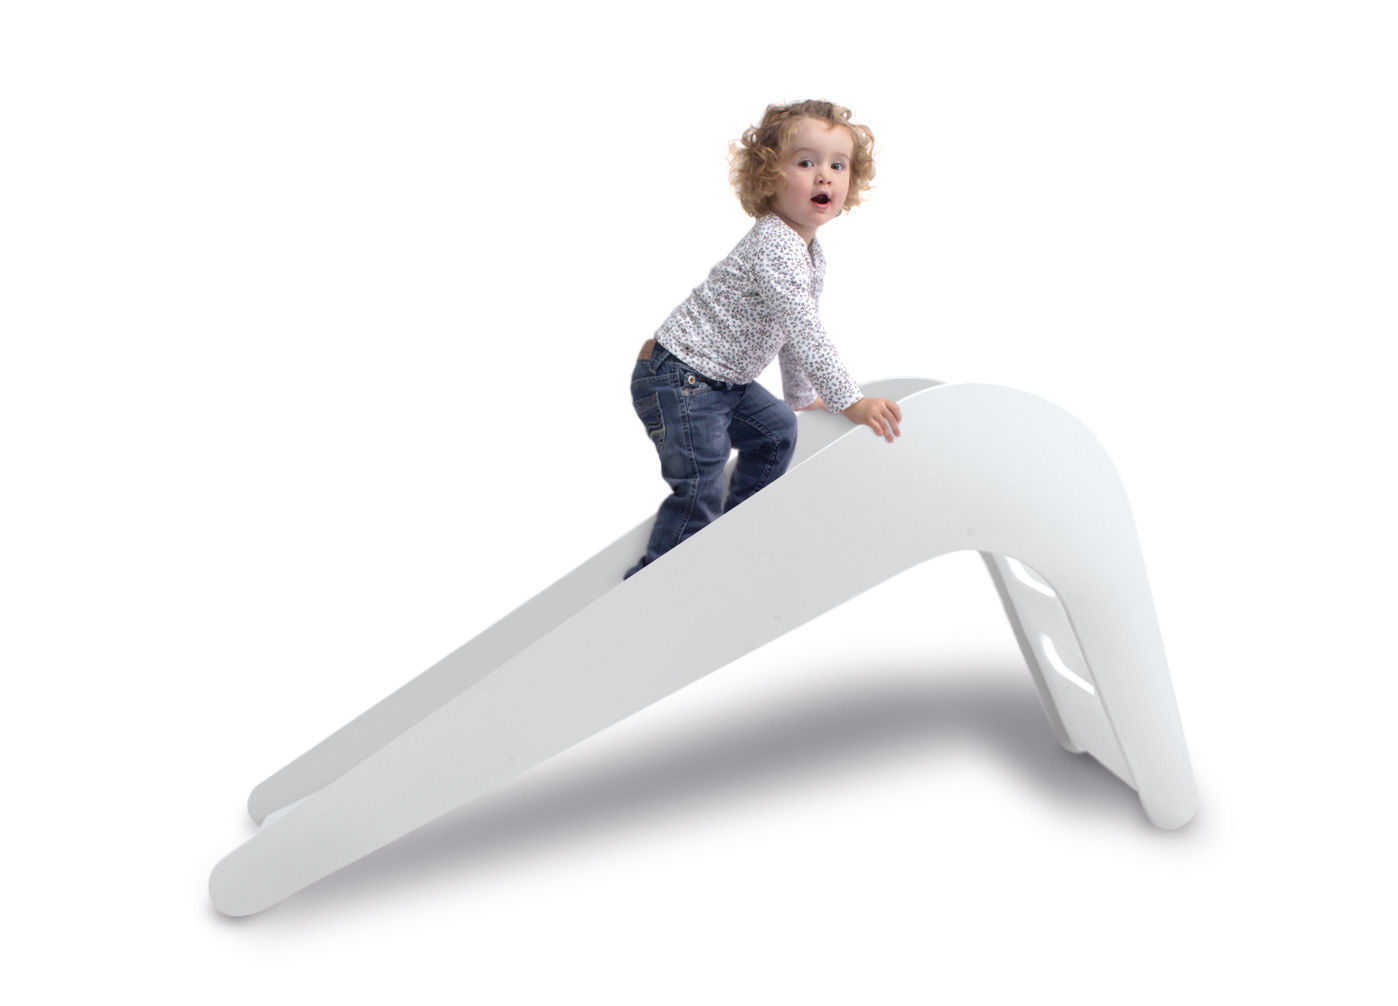 Jupiduu Kinderrutsche "White Elephant" , Jupiduu - Designed for Kids Jupiduu - Designed for Kids 嬰兒房/兒童房 玩具